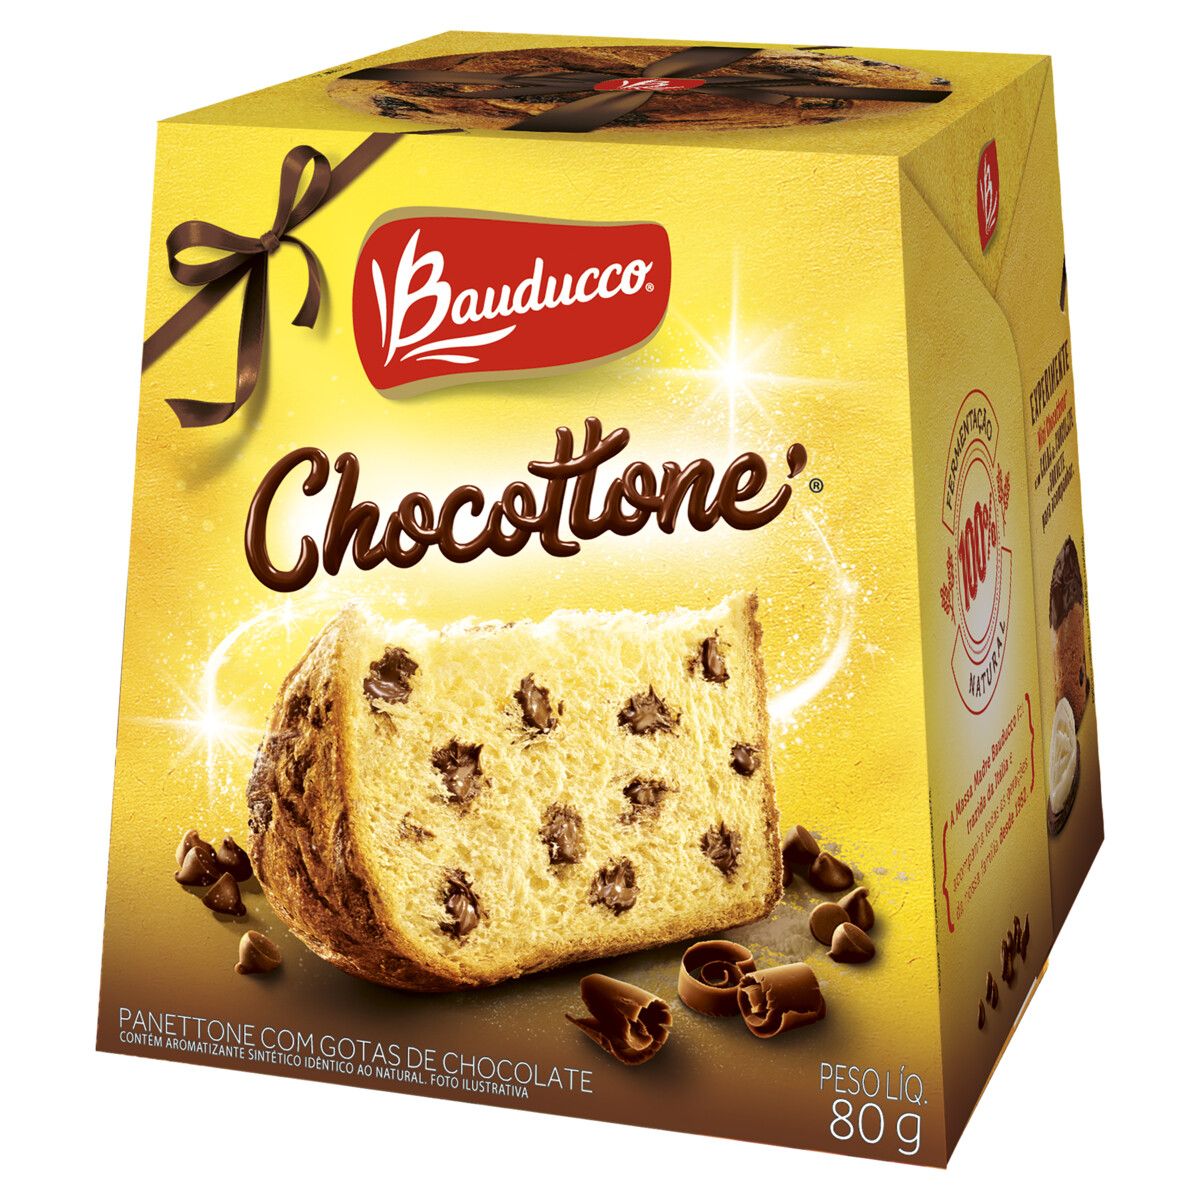 Panettone com Gotas de Chocolate Bauducco Chocottone Caixa 80g